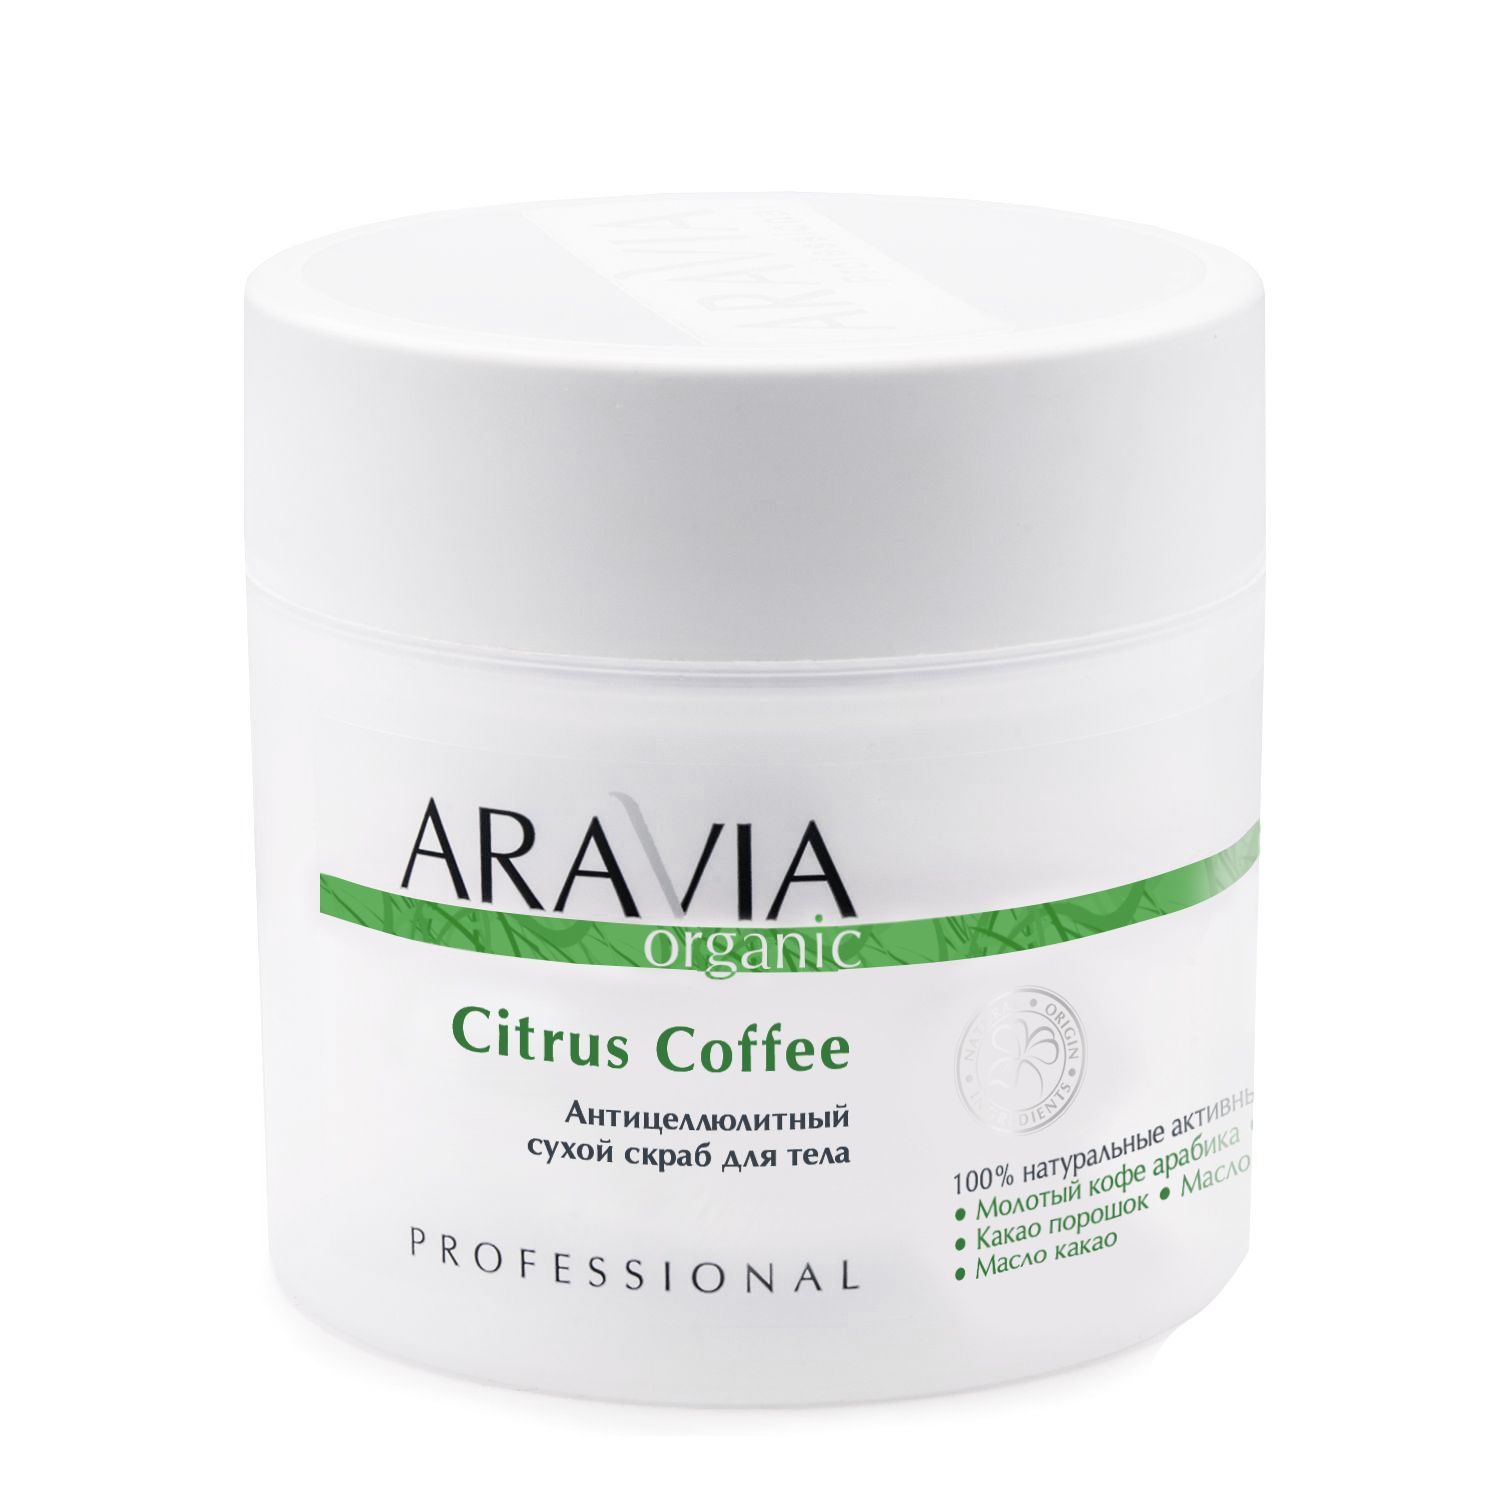 Антицеллюлитный сухой скраб для тела Citrus Coffee, 300 мл, ARAVIA Organic